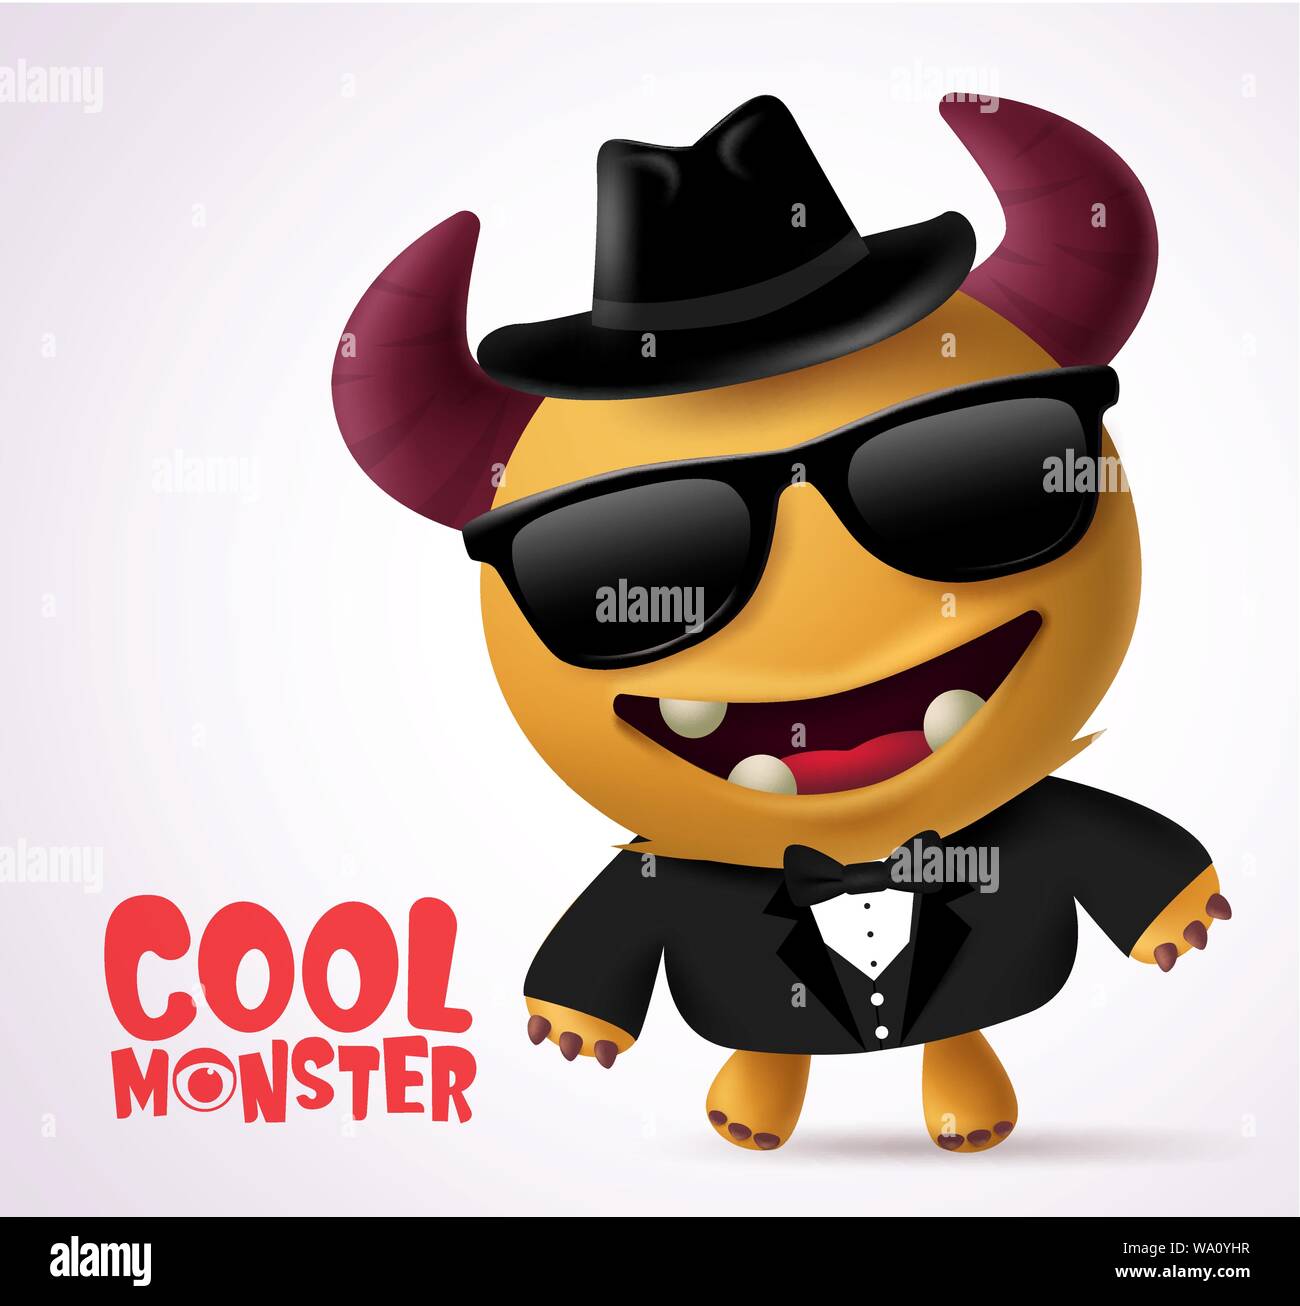 Cool monster escort vector character design. Cool Monster character creature with funny pose wearing  black coat, necktie, glasses and hat. Stock Vector